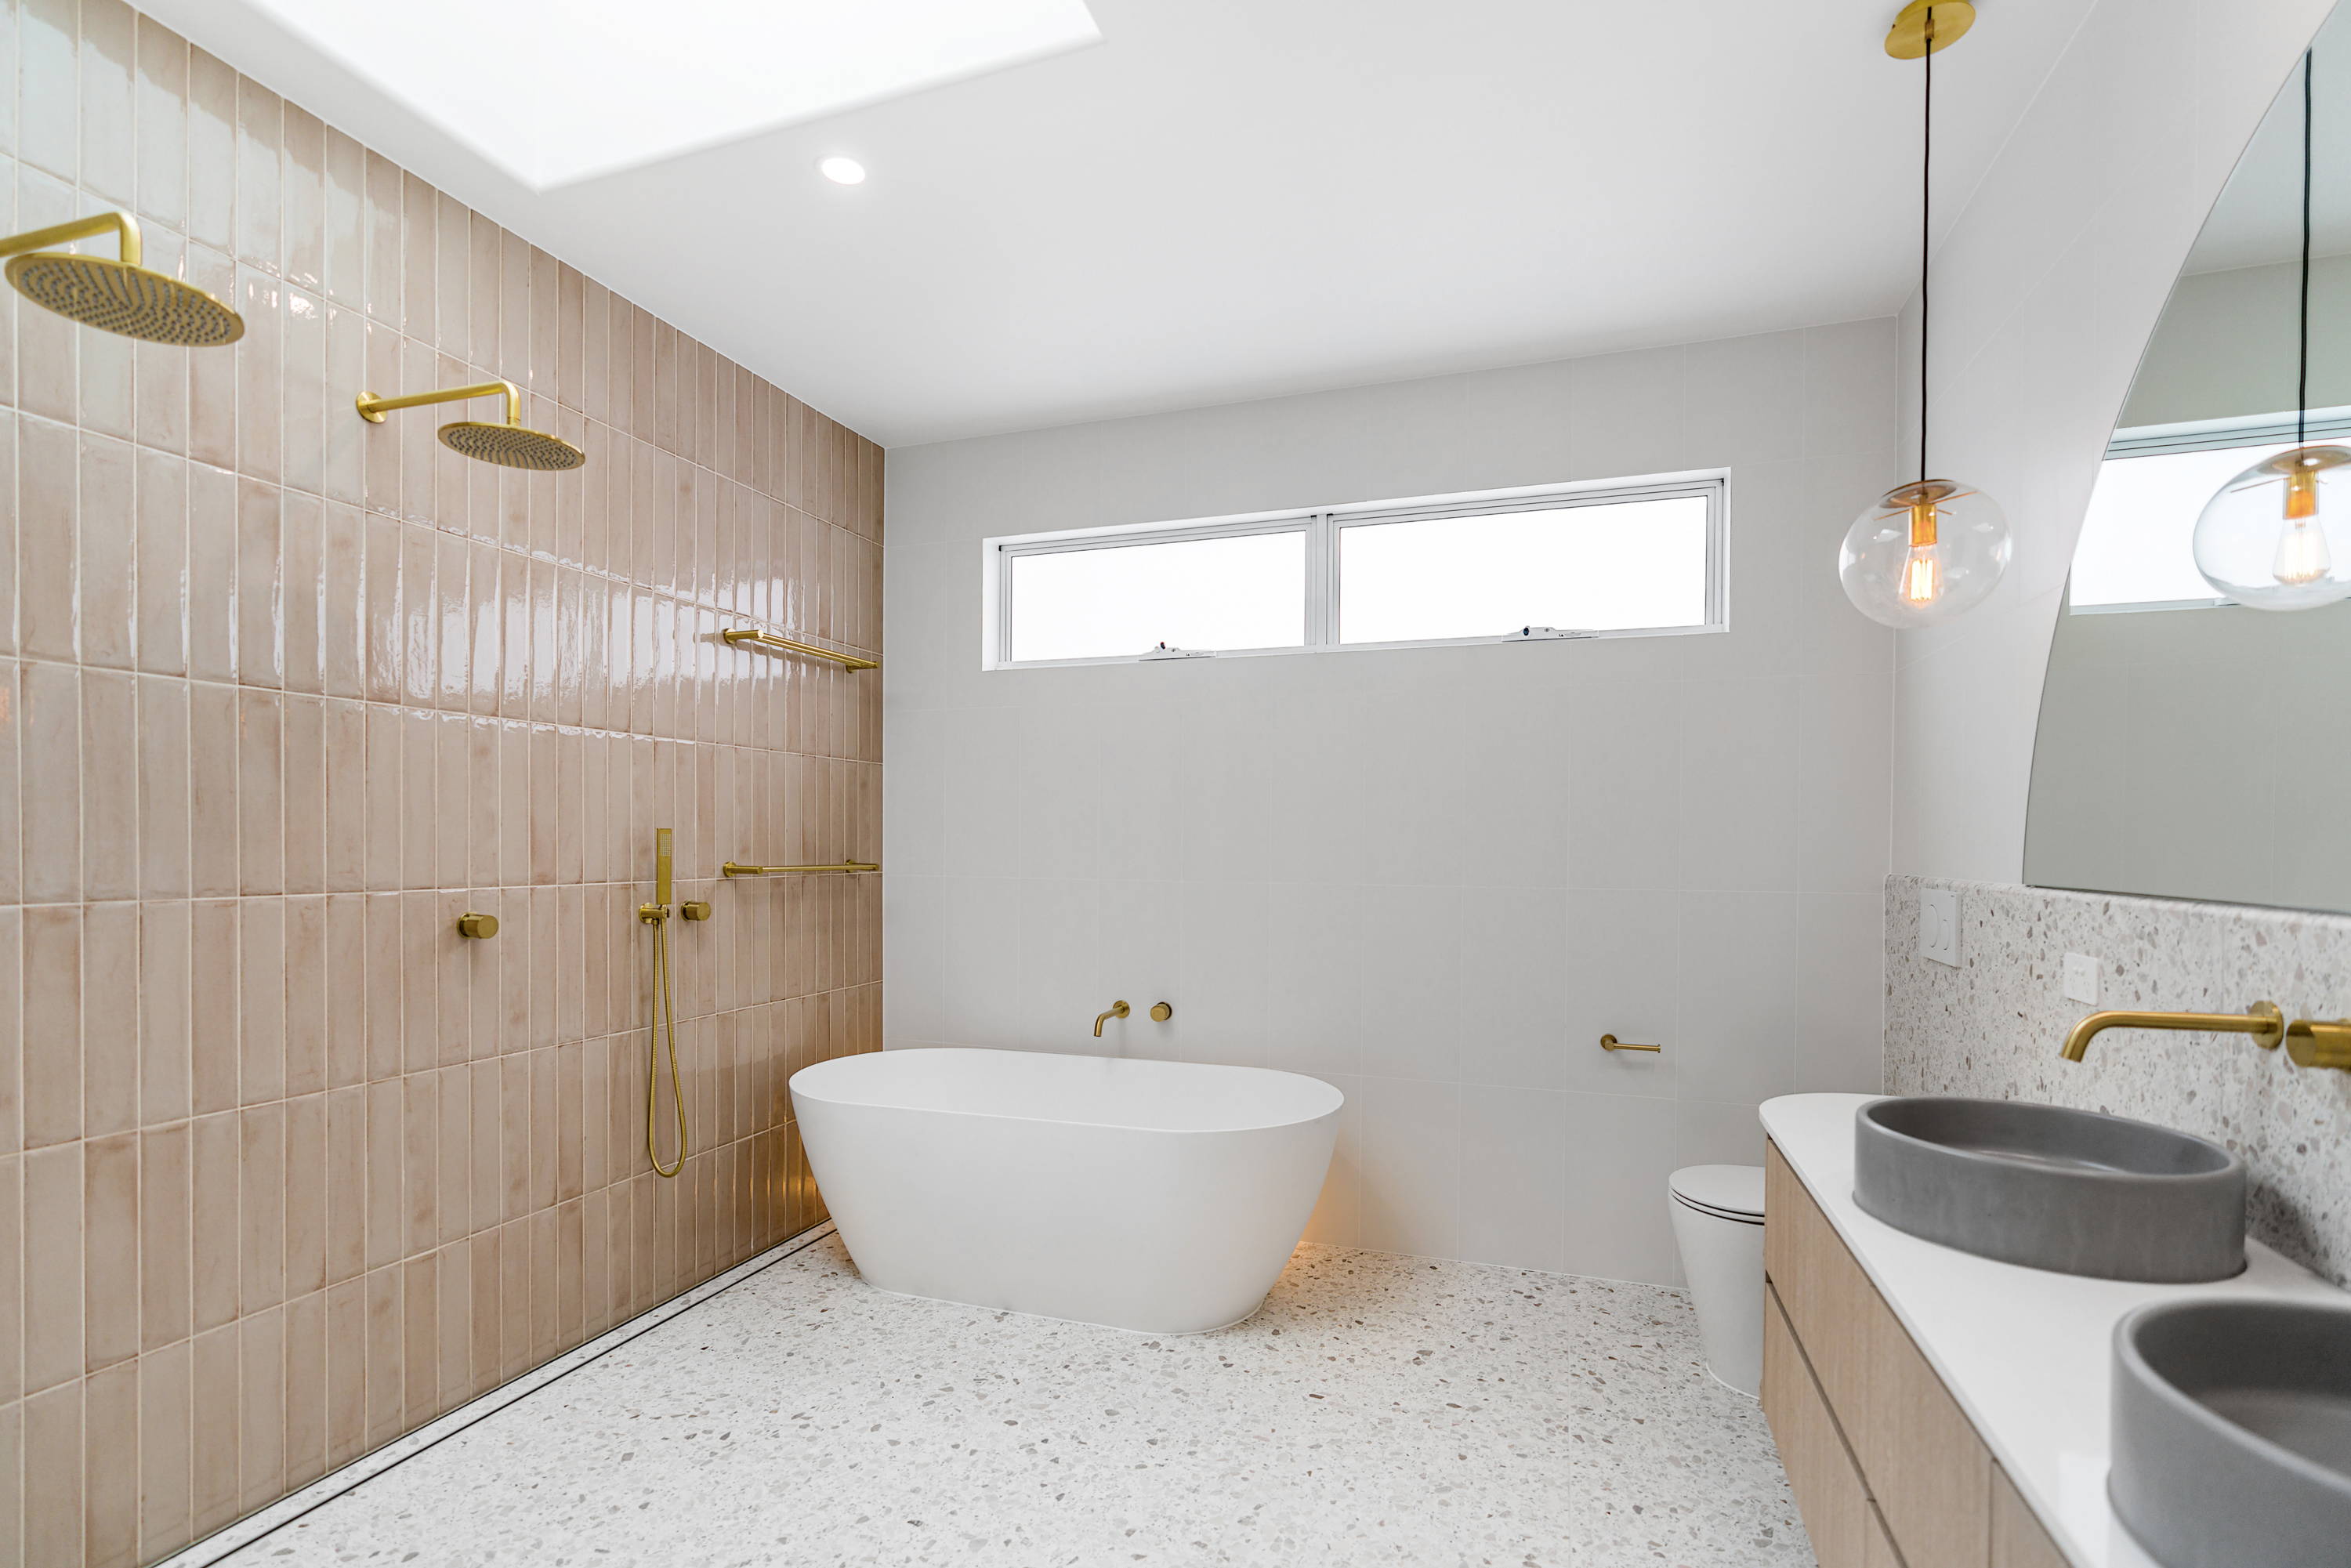 Concrete Basins, Bathroom Sink, Luxury Basin